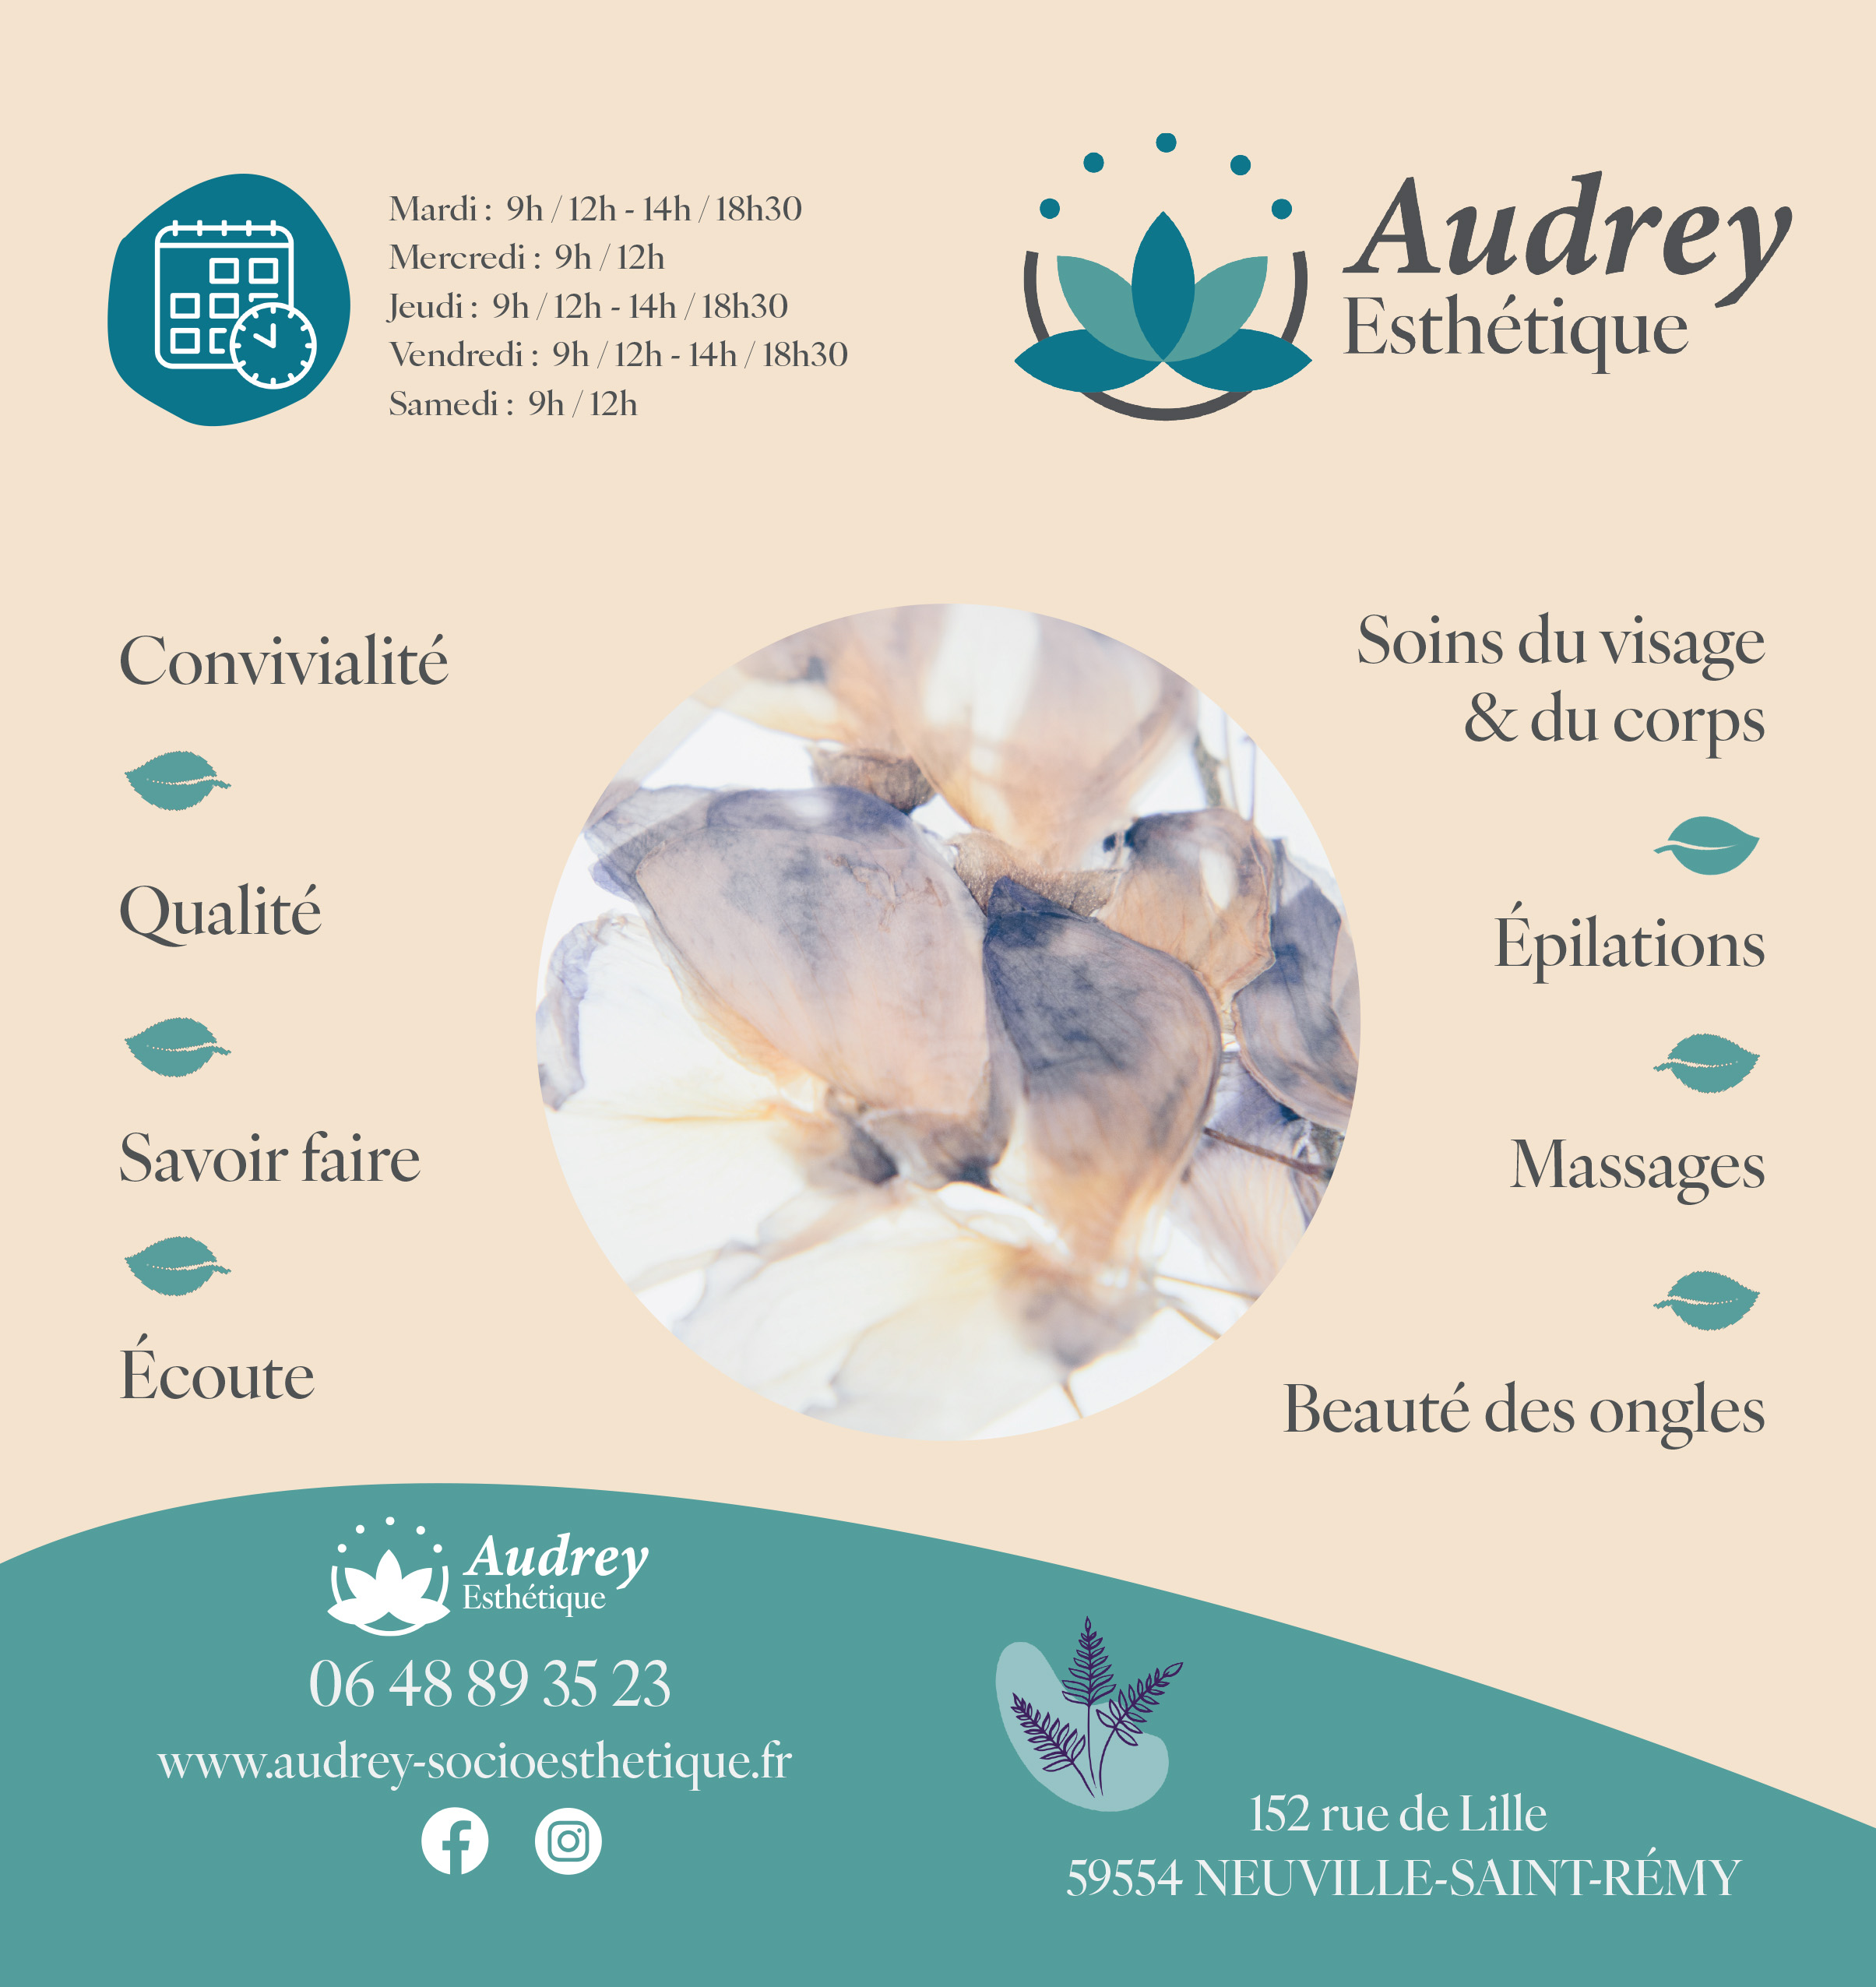 Audrey-esthetique-neuville-saint-remy